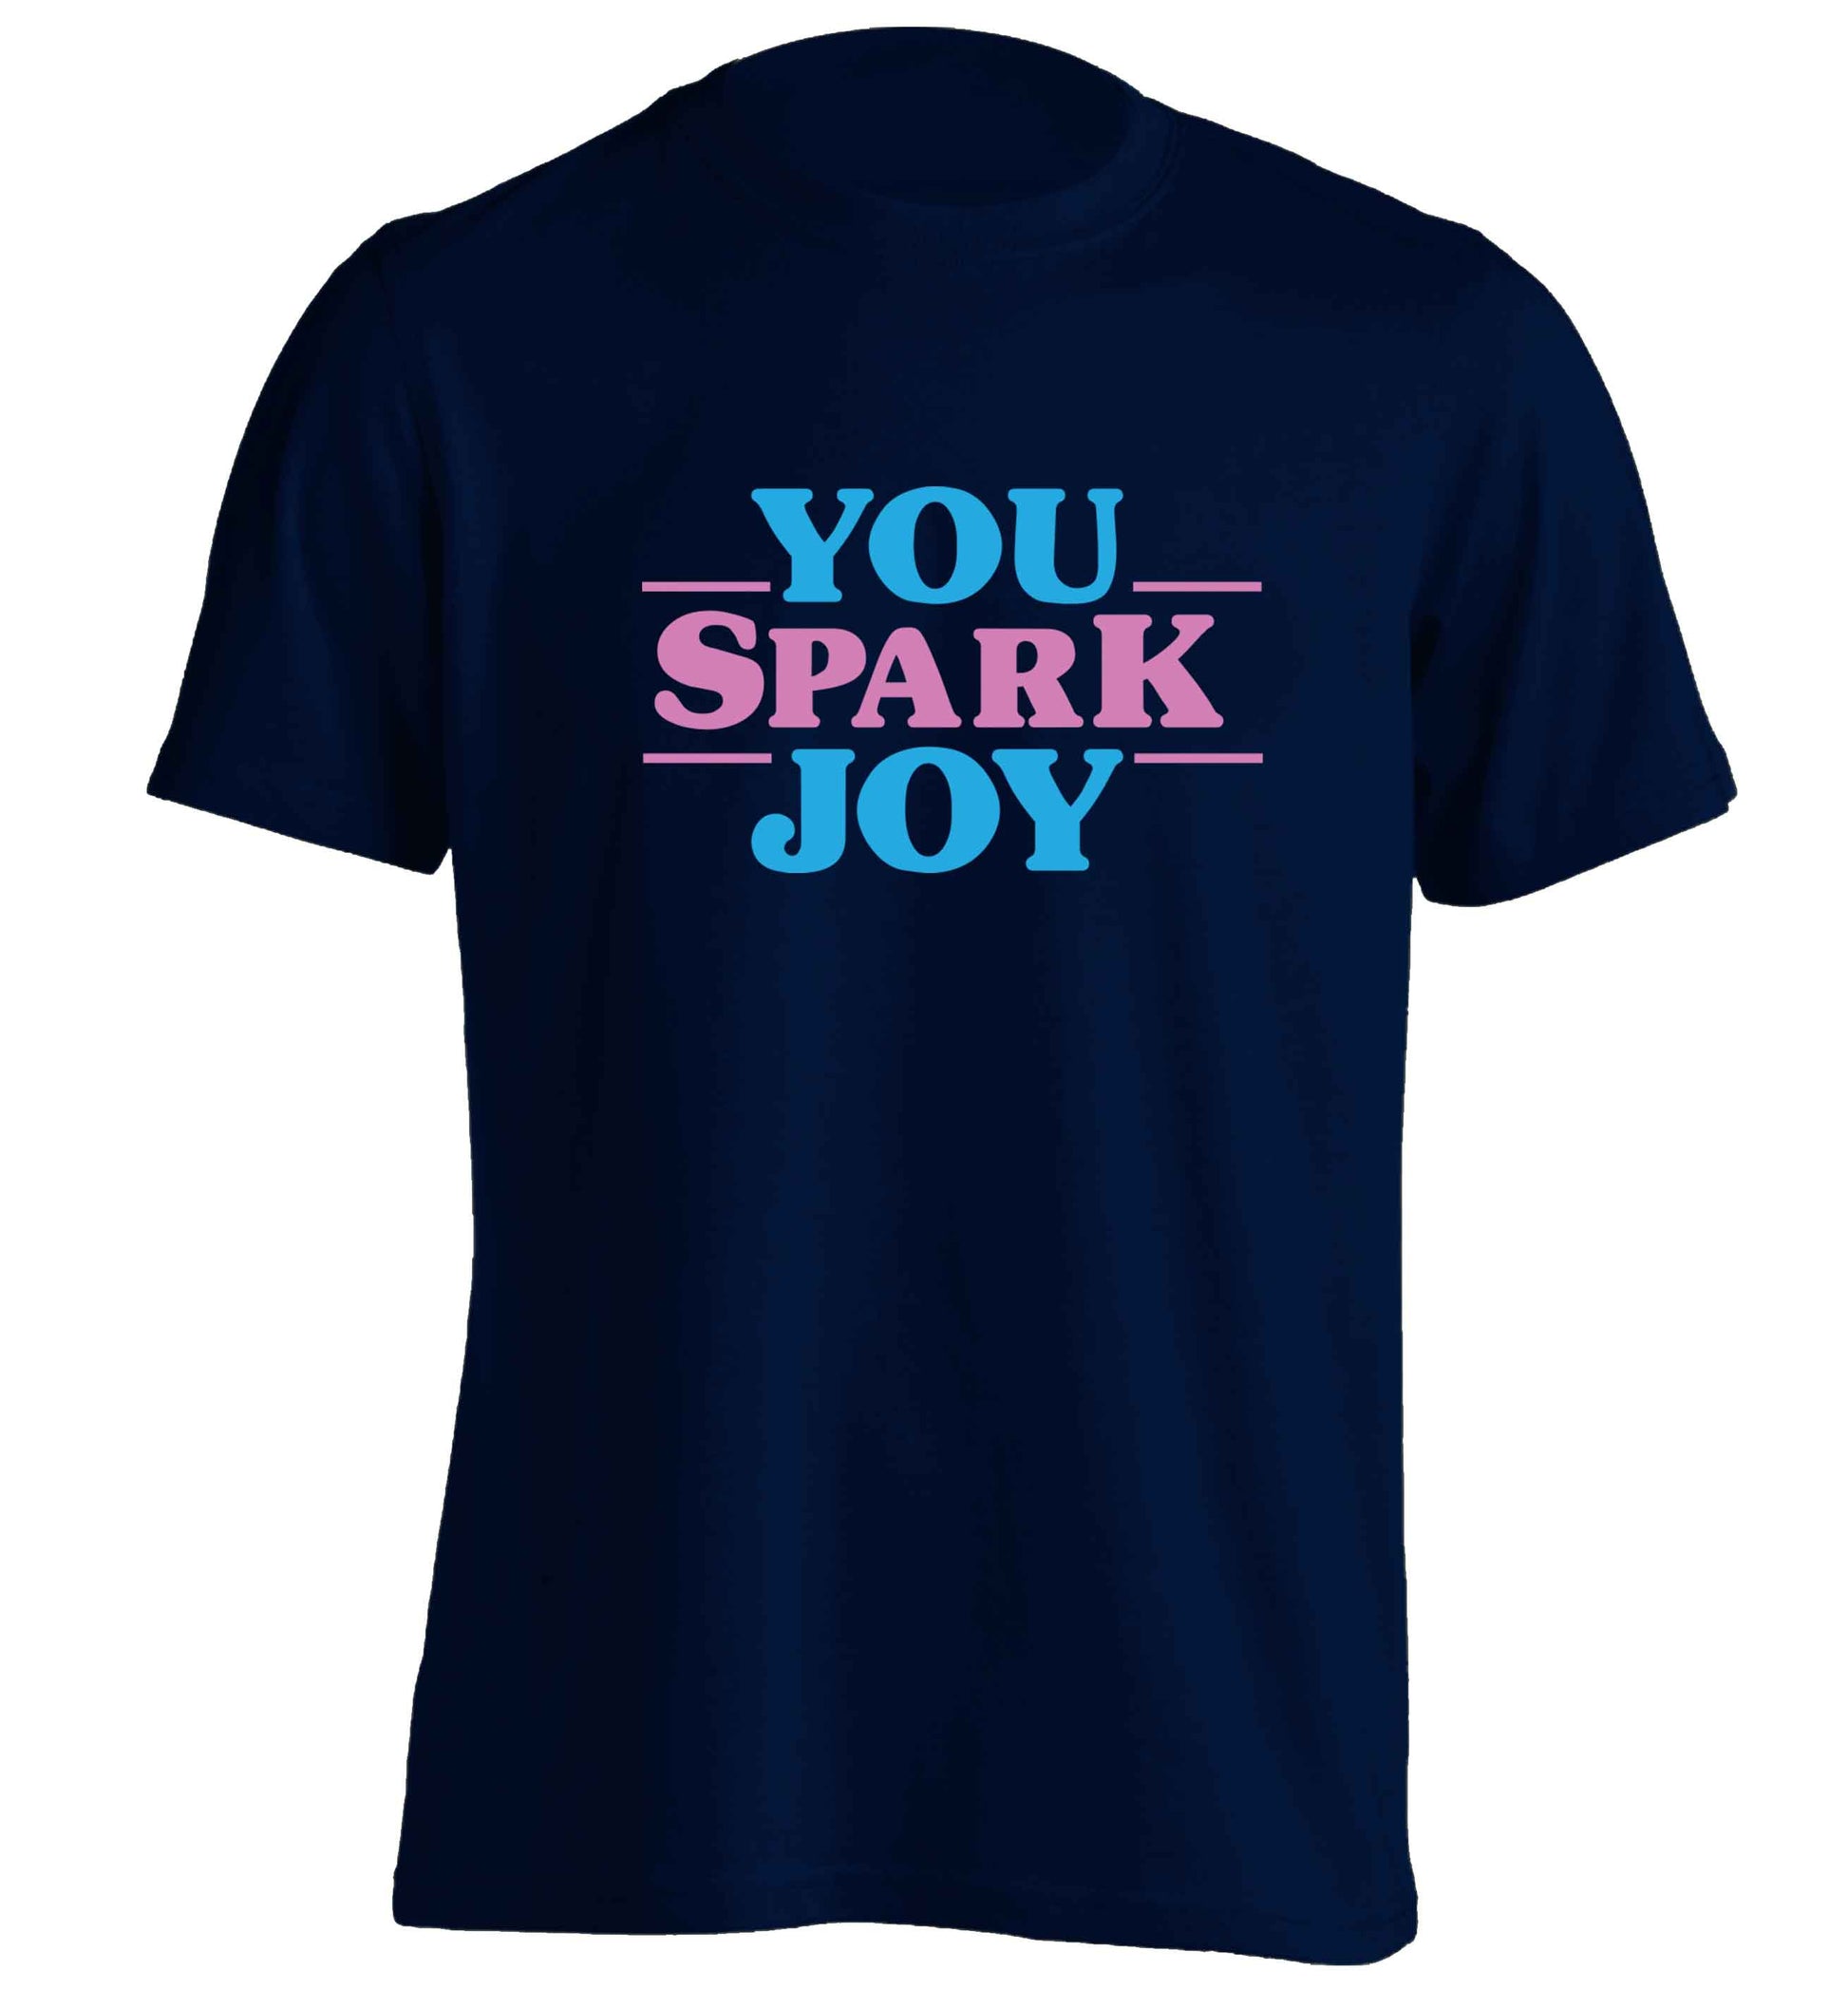 You spark joy adults unisex navy Tshirt 2XL